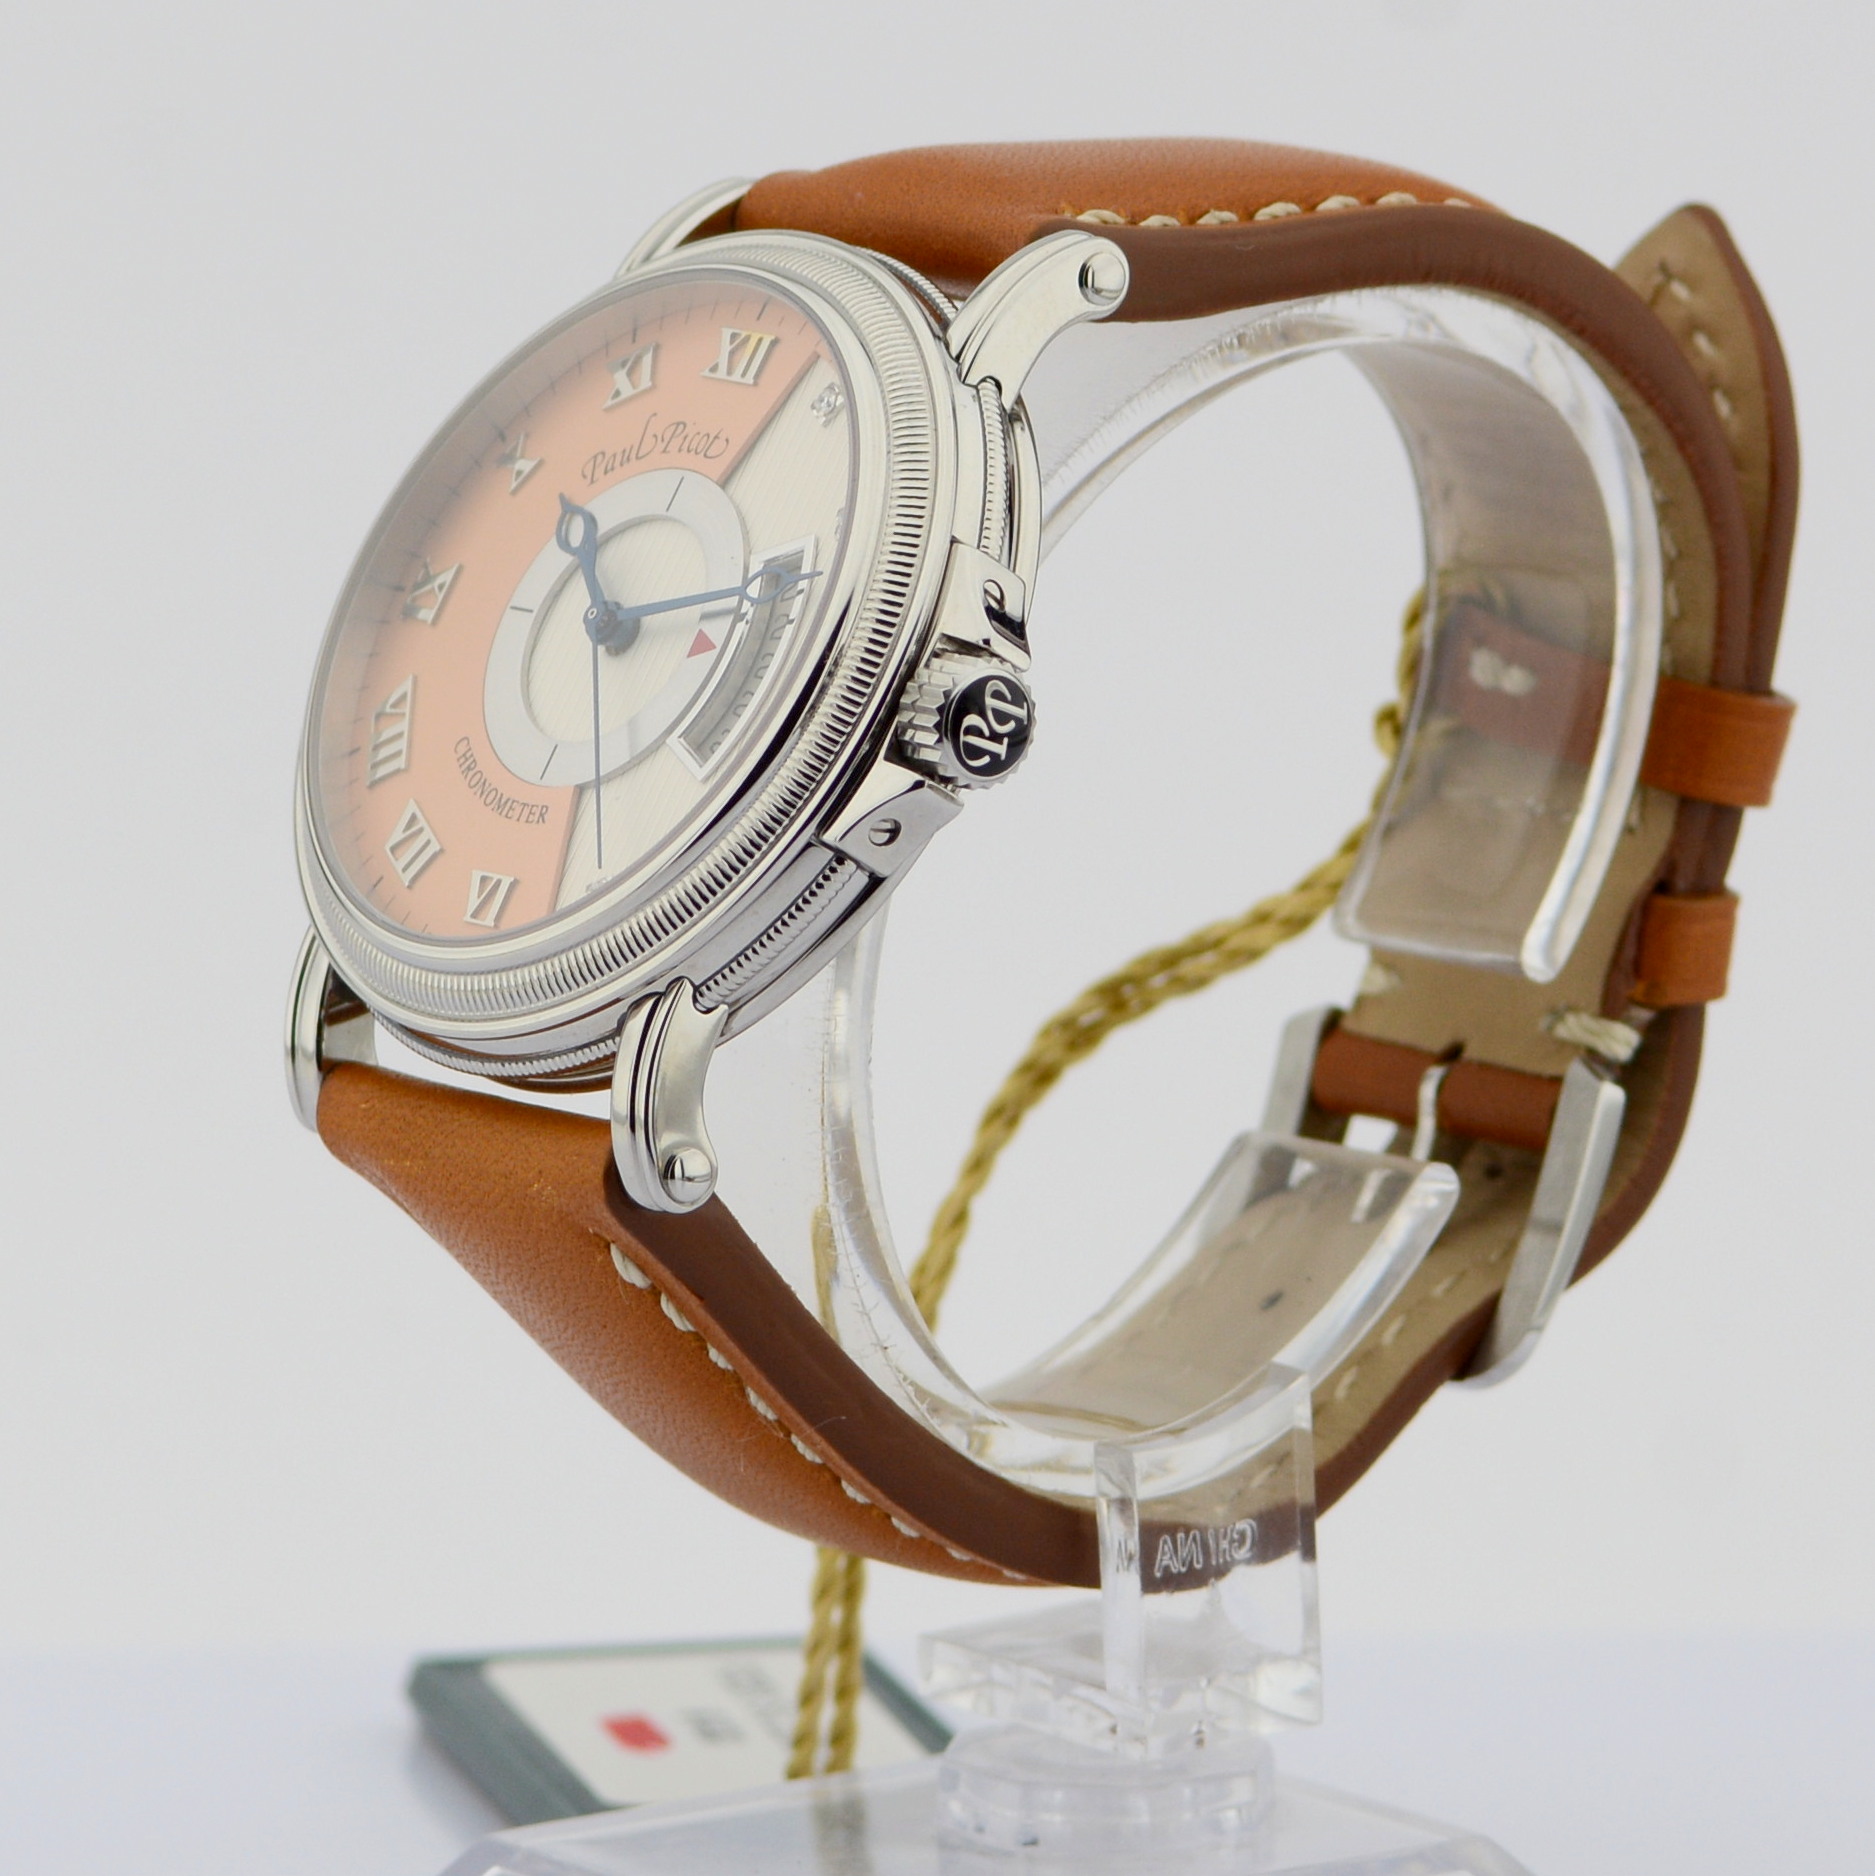 Paul Picot / 3351 SG Atelier Diamond (NEW) - Gentlmen's Steel Wrist Watch - Image 2 of 6